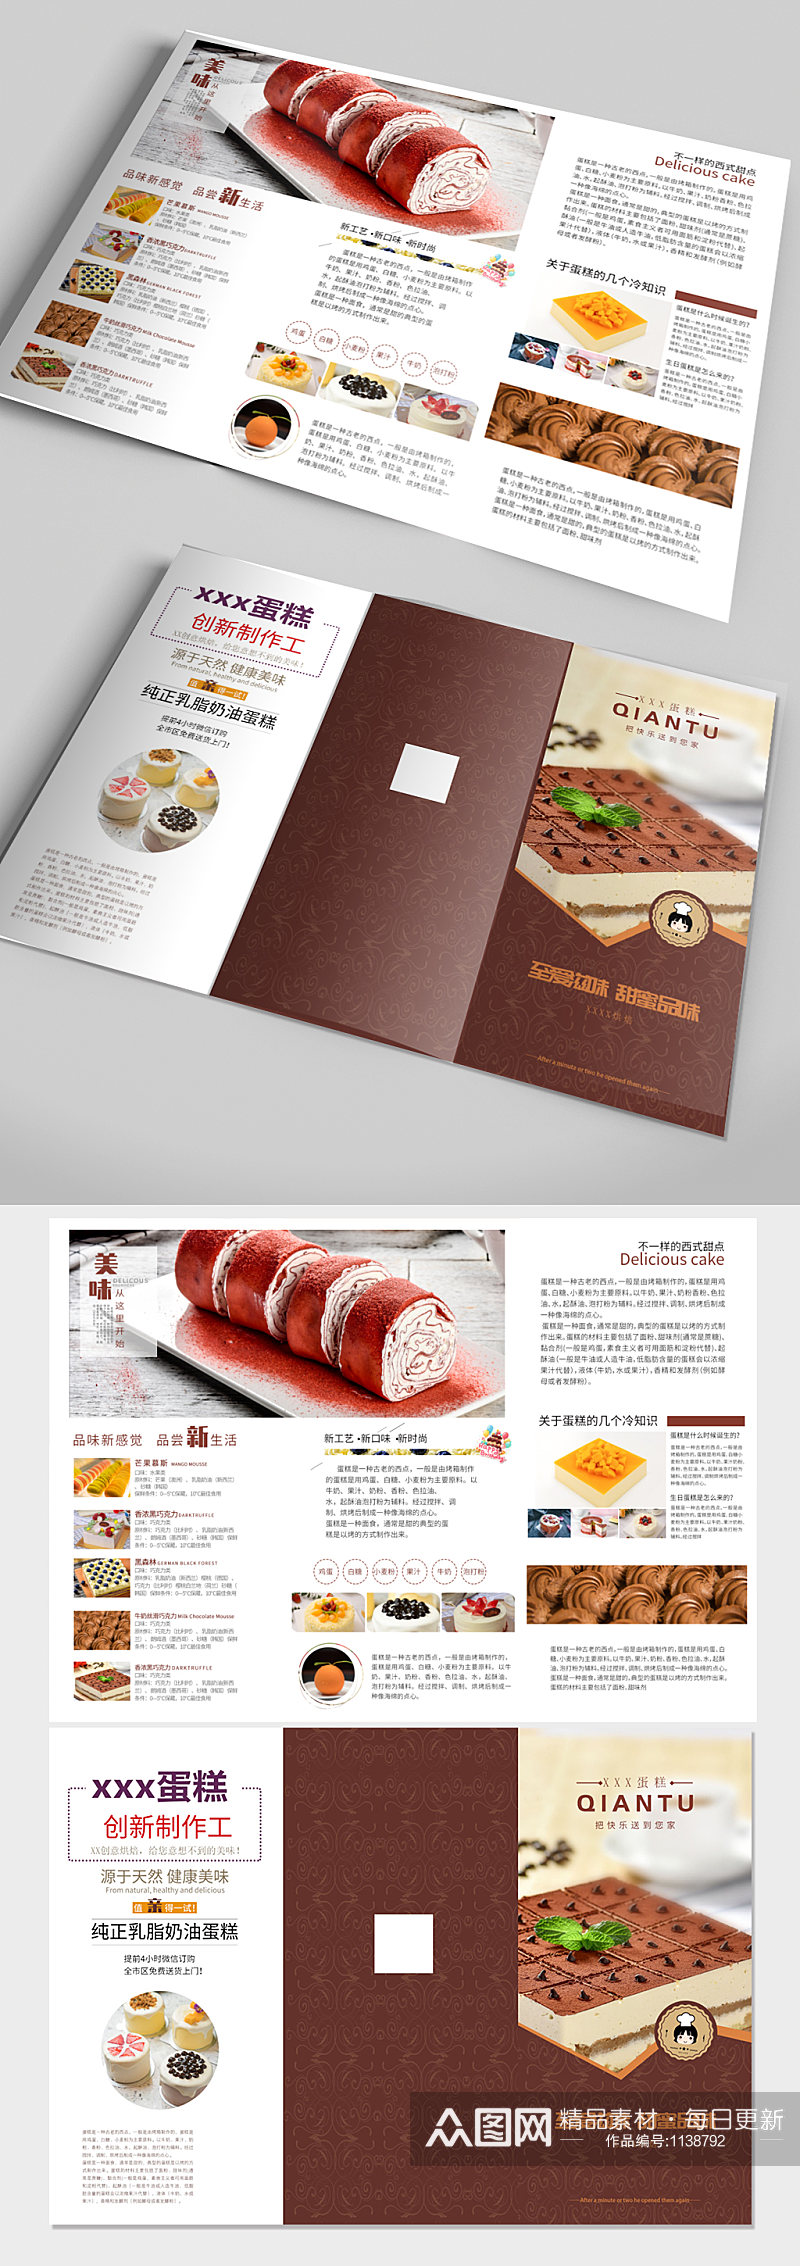 大气蛋糕店烘焙馆宣传手册 三折页素材